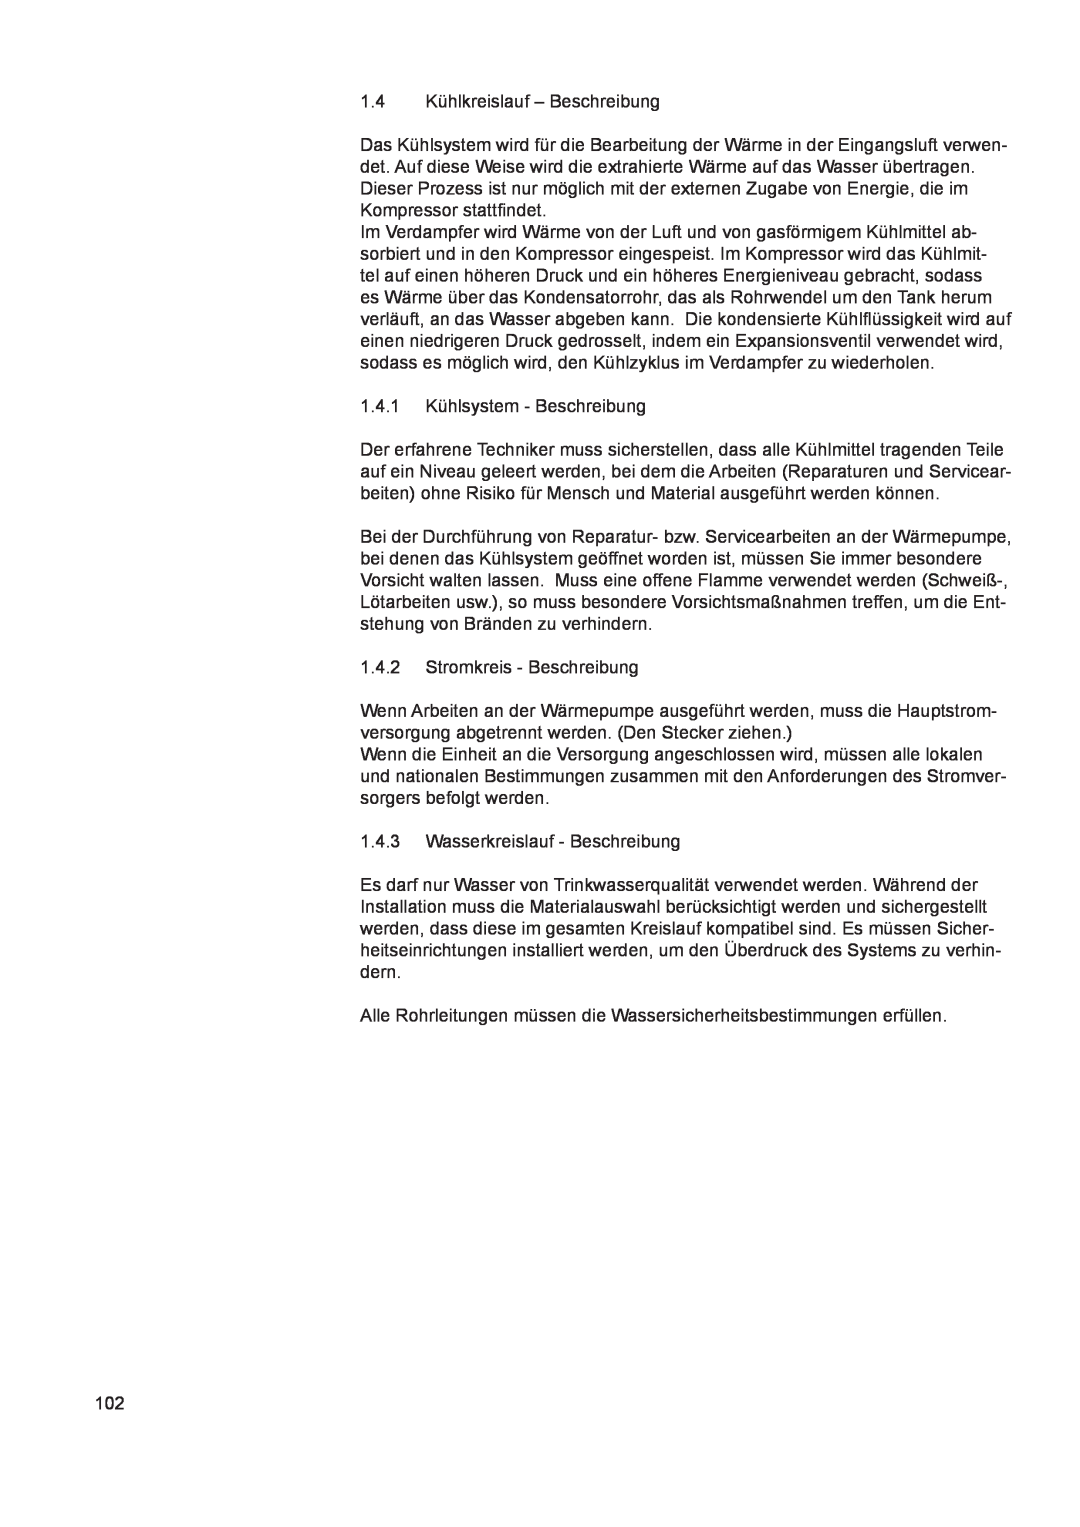 A.O. Smith 290 1.4Kühlkreislauf – Beschreibung, 1.4.1Kühlsystem - Beschreibung, 1.4.2Stromkreis - Beschreibung 